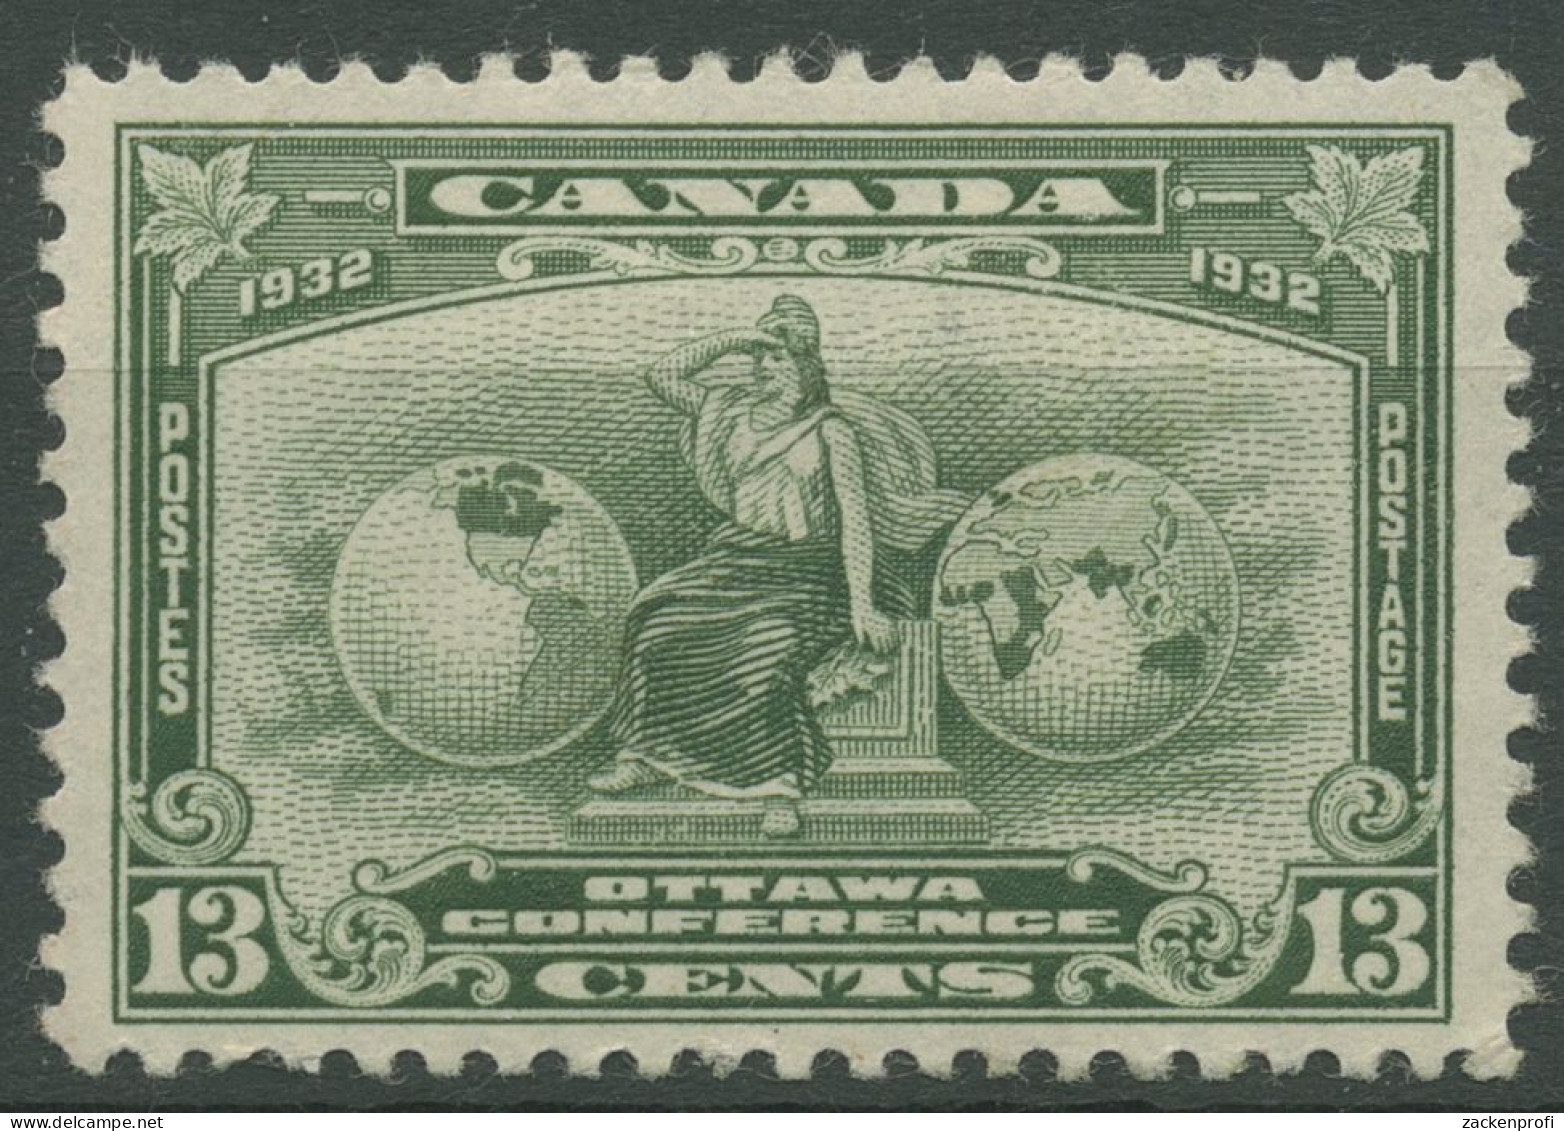 Kanada 1932 Wirtschaftskonferenz In Ottawa Allegorie 161 Mit Falz, Haftstellen - Ungebraucht